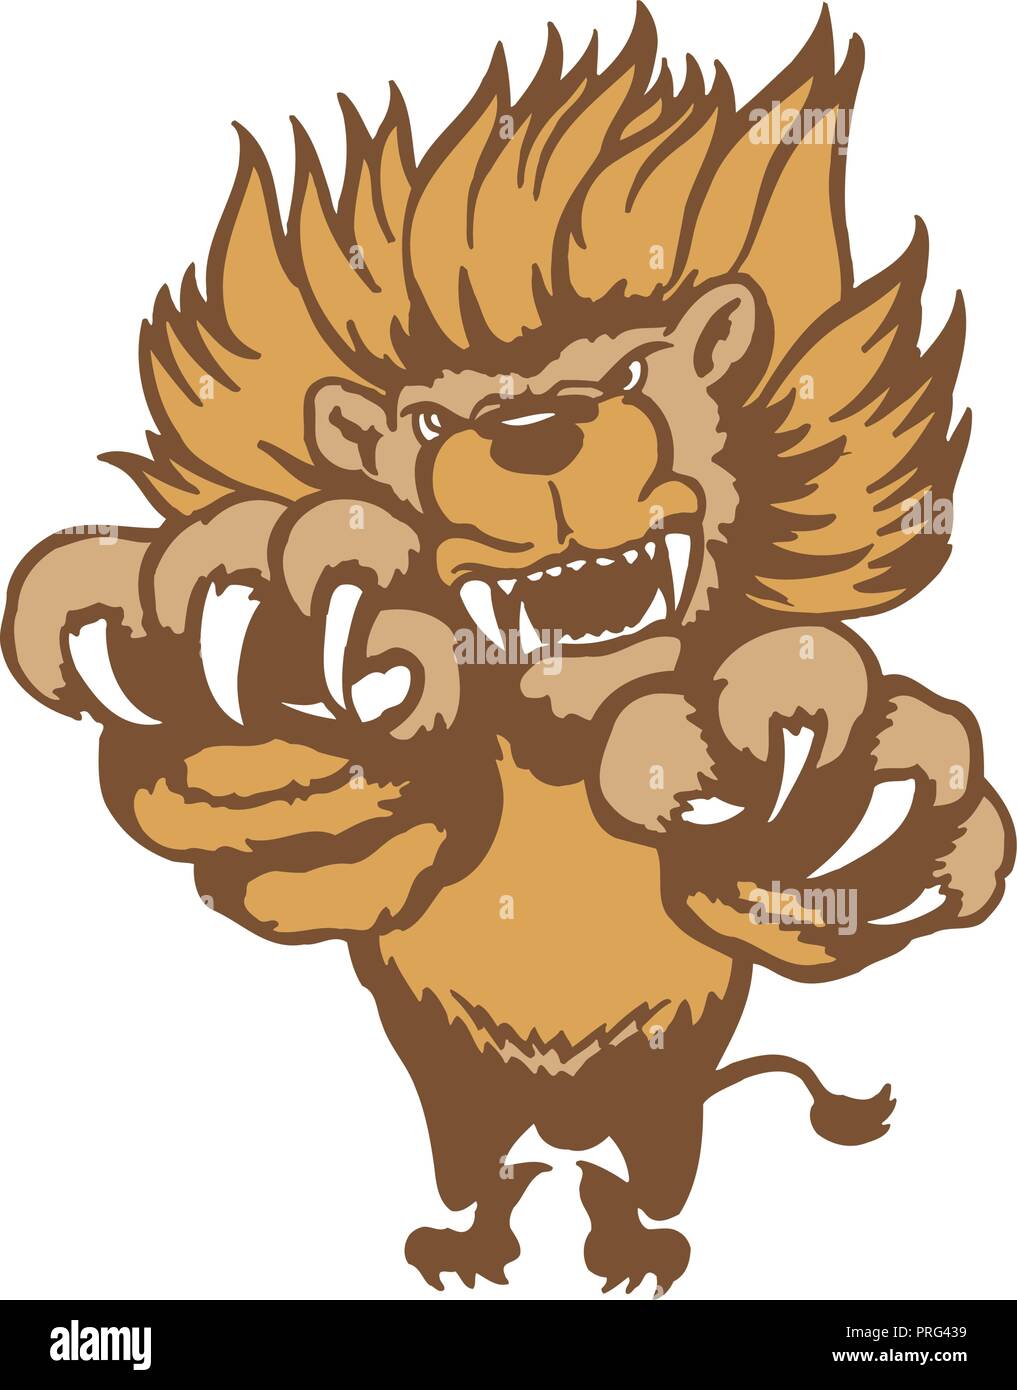 Fully editable illustration of a roaring cartoon Lion. Vector Illustration. Stock Vector